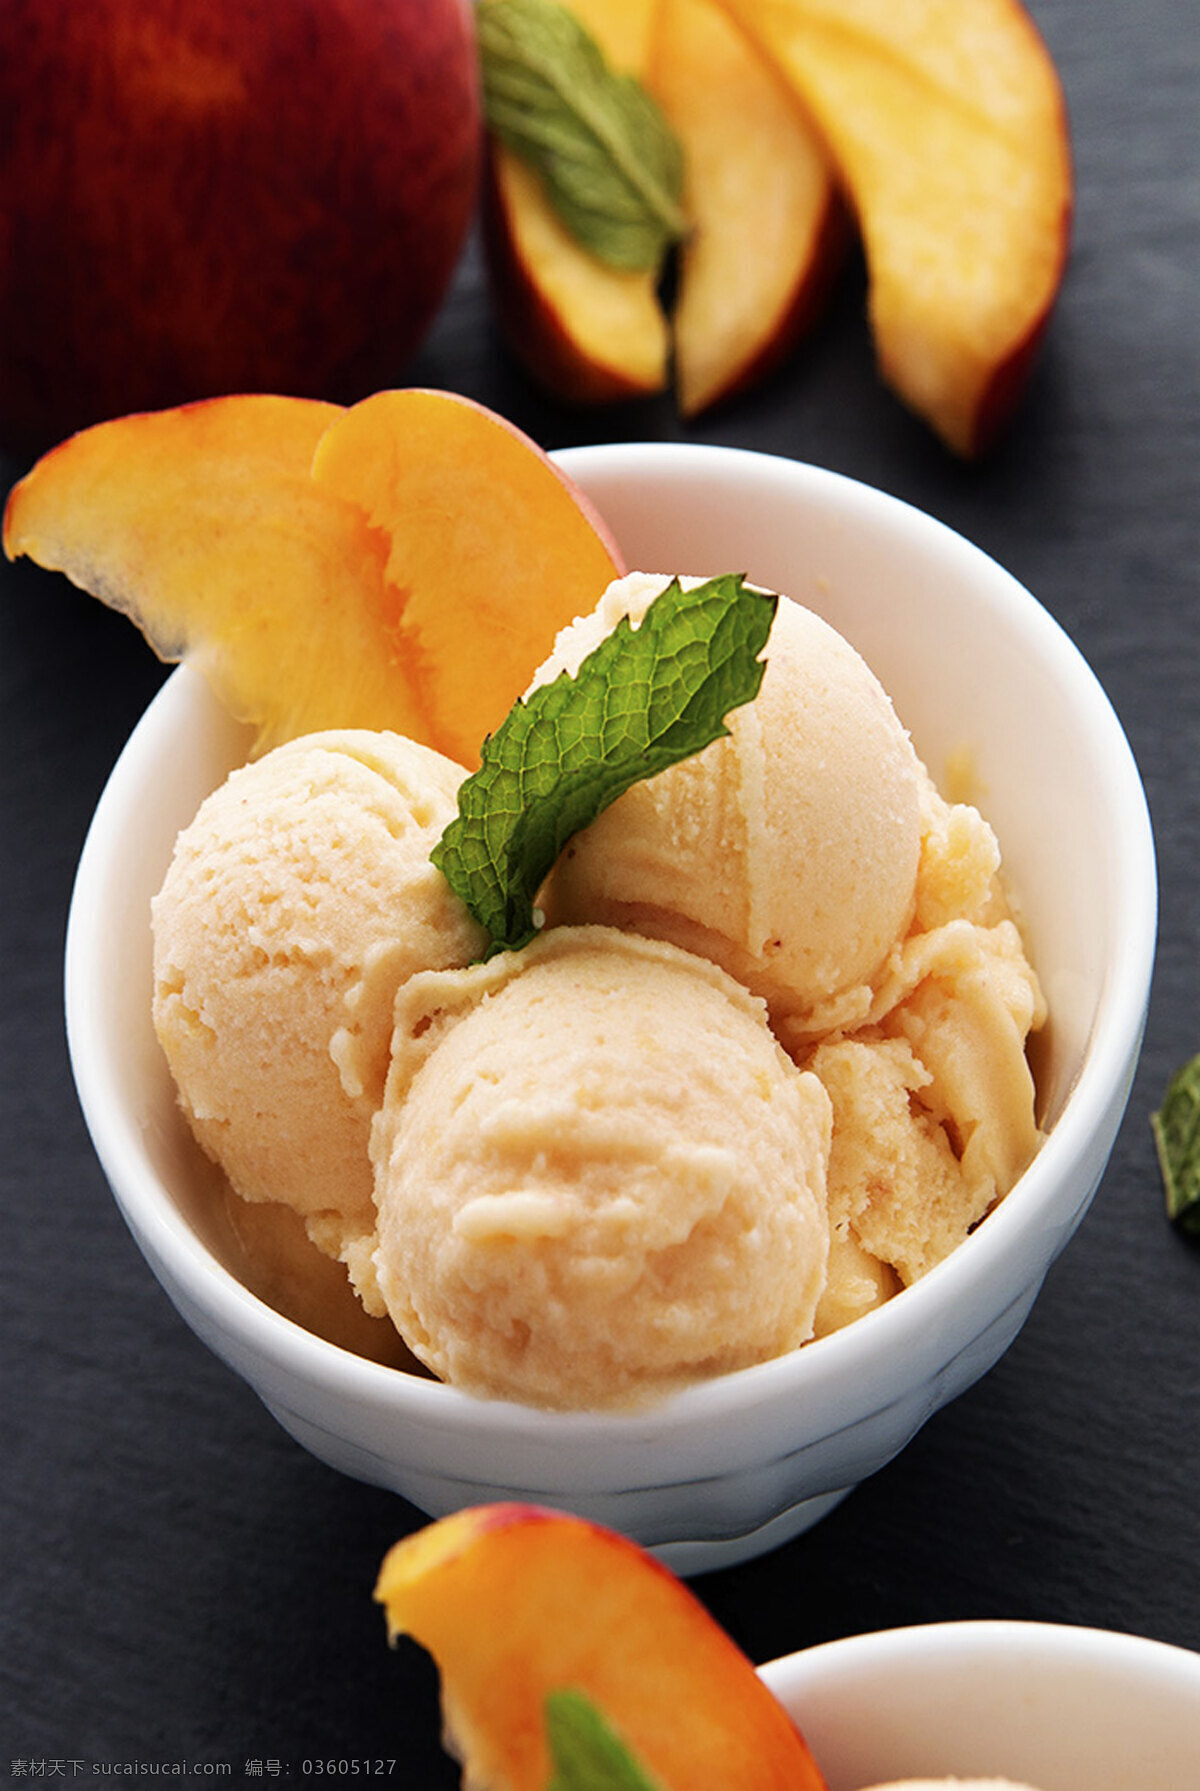 【小y和小绿】夏天到了，来一份香甜可口的黄桃香草冰淇淋吧 - 哔哩哔哩